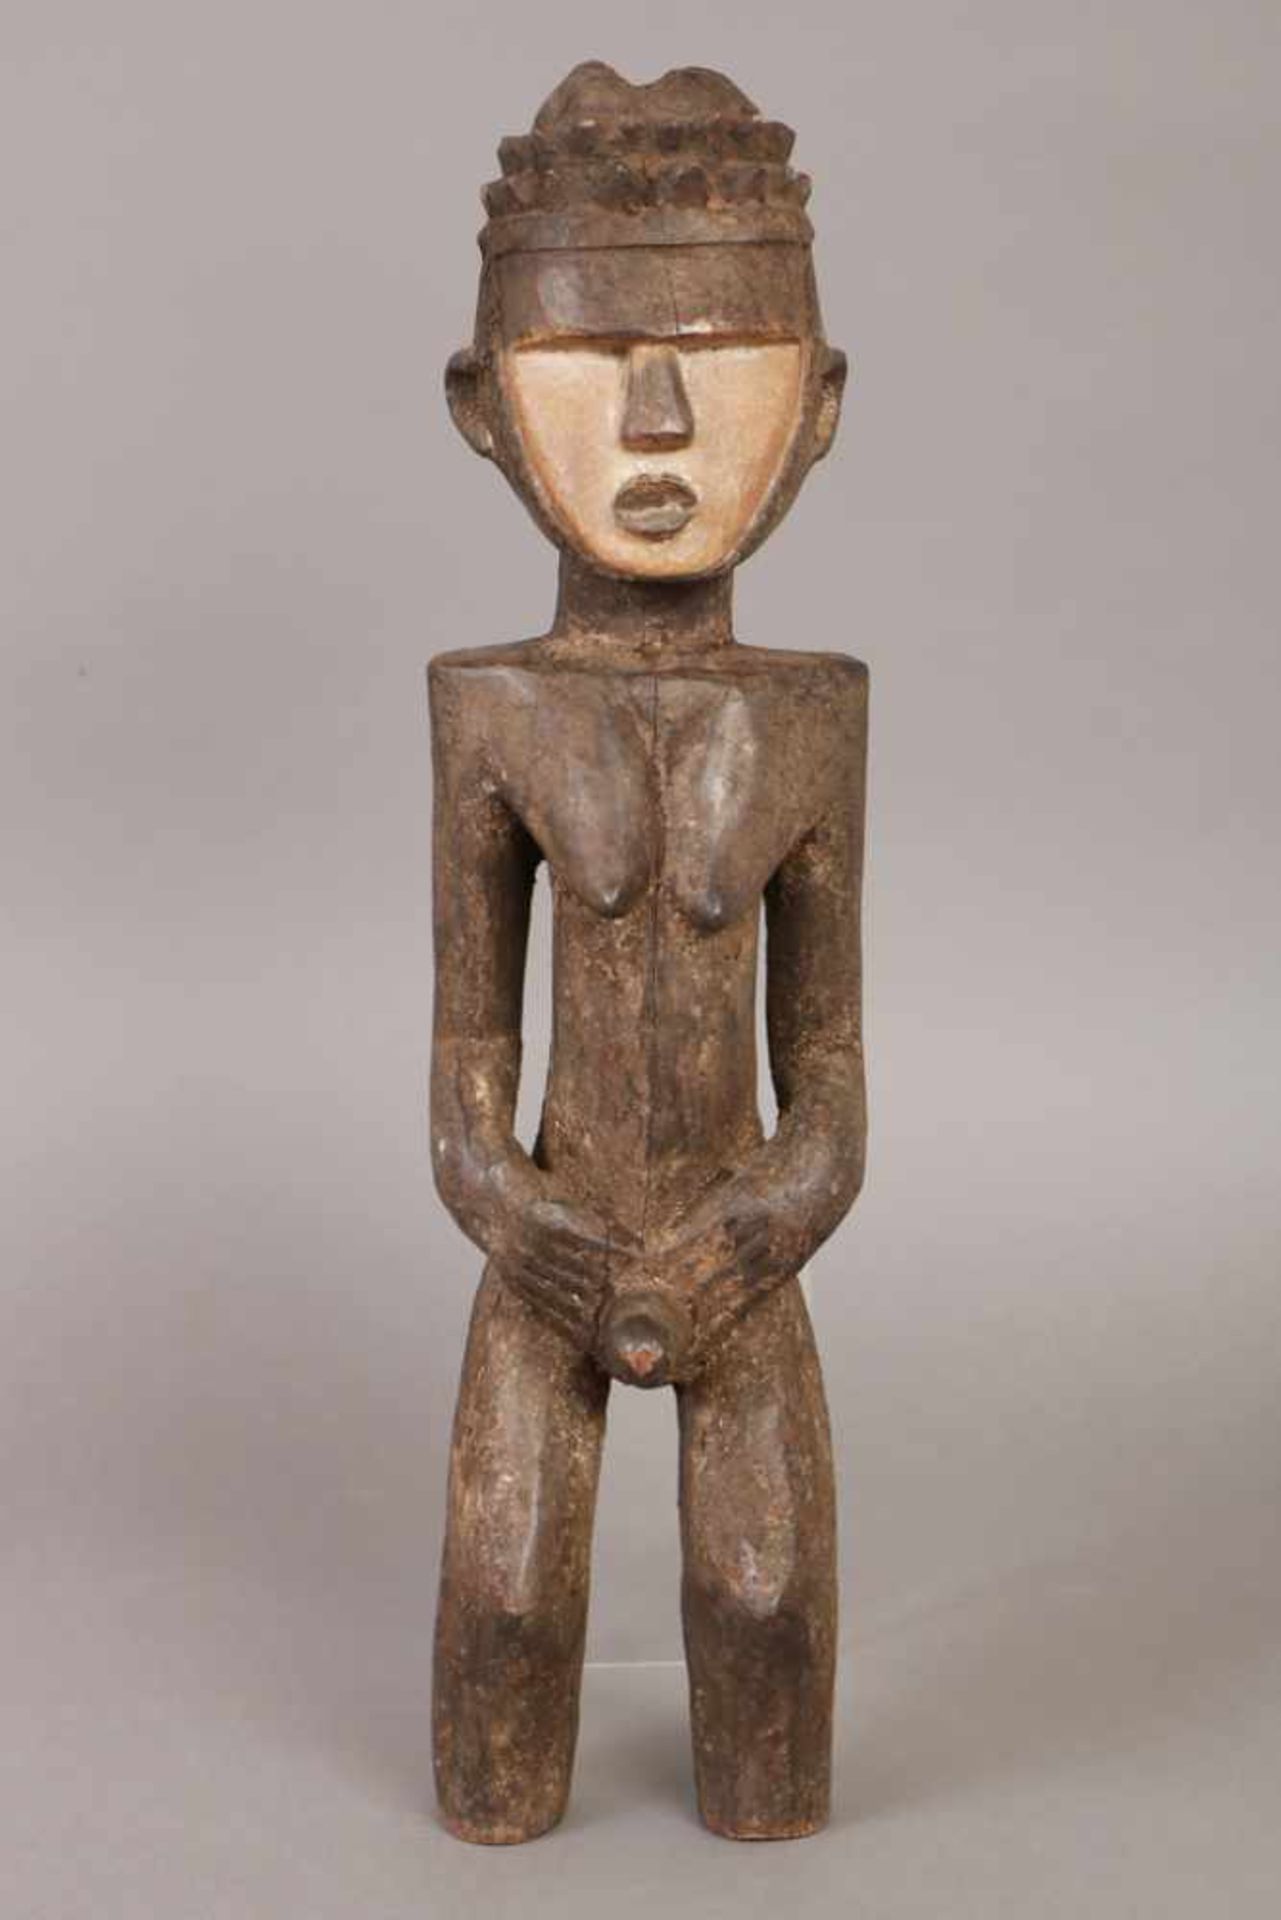 Afrikanische Ritualfigur Holz, dunkel patiniert, Urhobo, Nigeria, männliche Figur mit spitzen